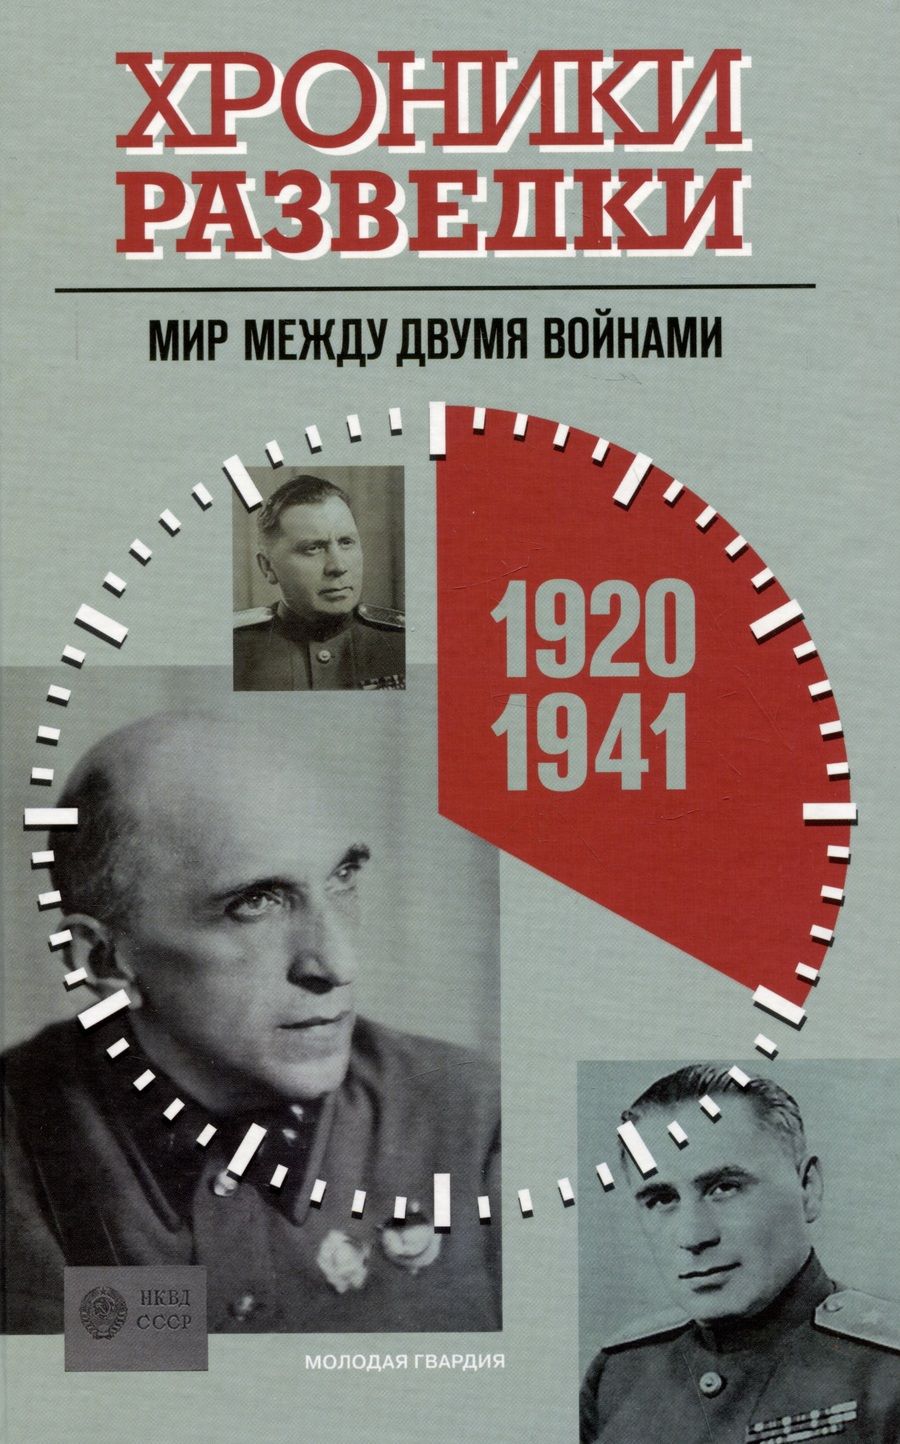 Обложка книги "Бондаренко: Хроники разведки. Мир между двумя войнами. 1920—1941 годы"